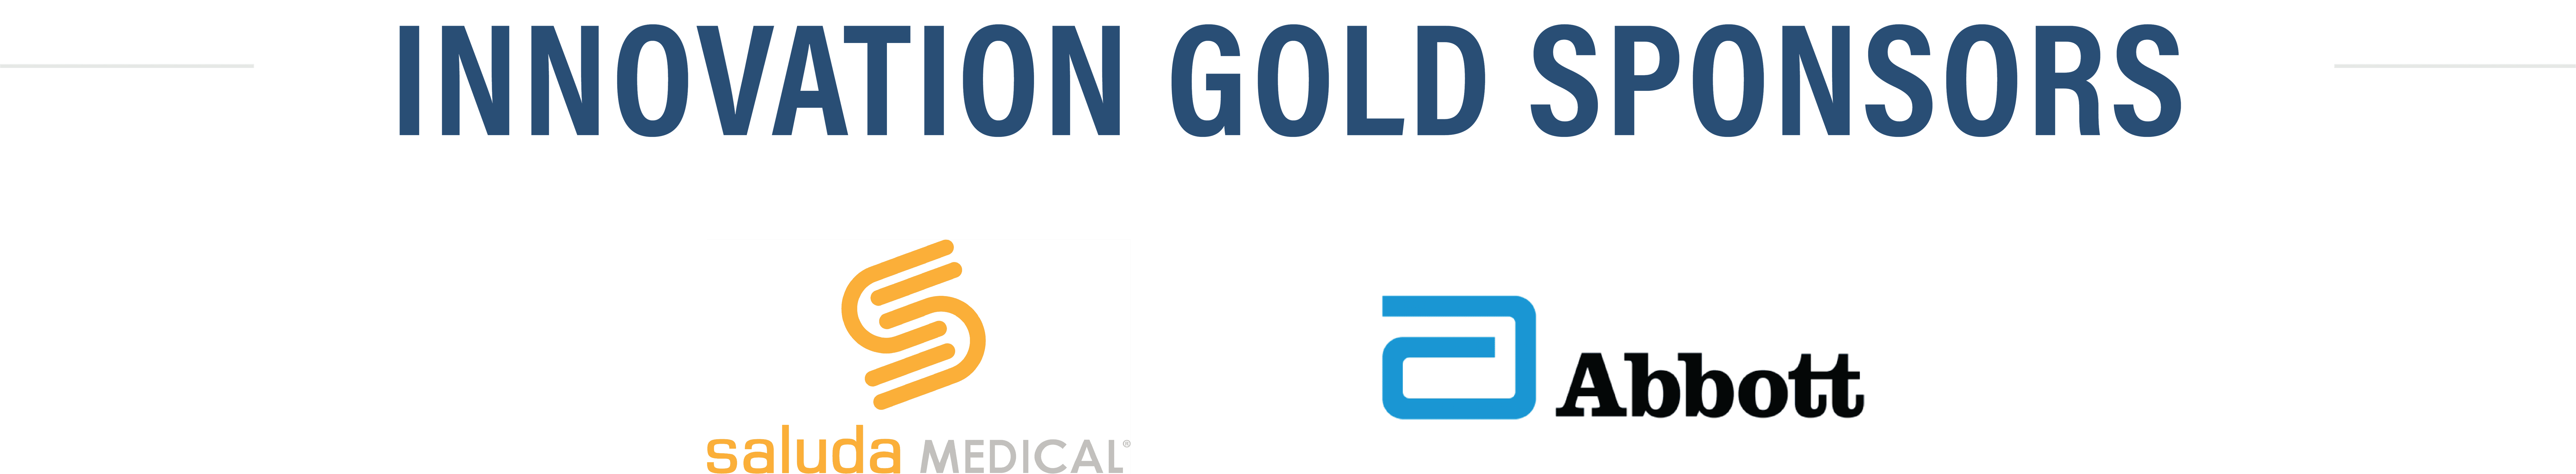 Innovation Gold Sponsors